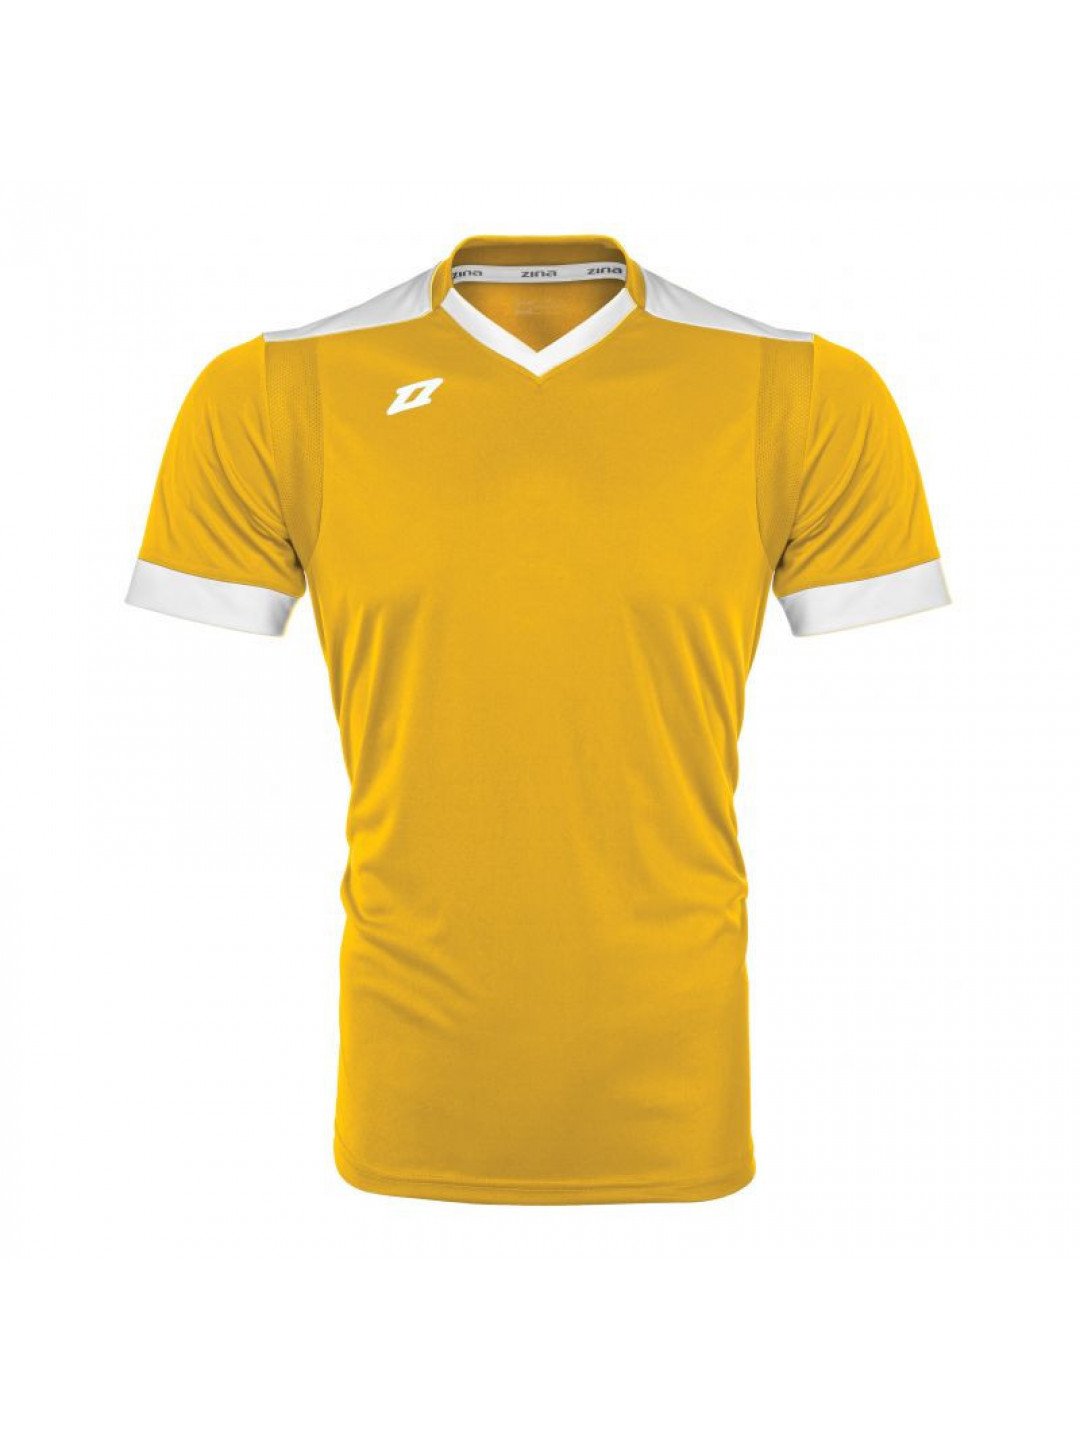 Pánské fotbalové tričko Tores M 60B2-2063E žluté – Zina Velikost S